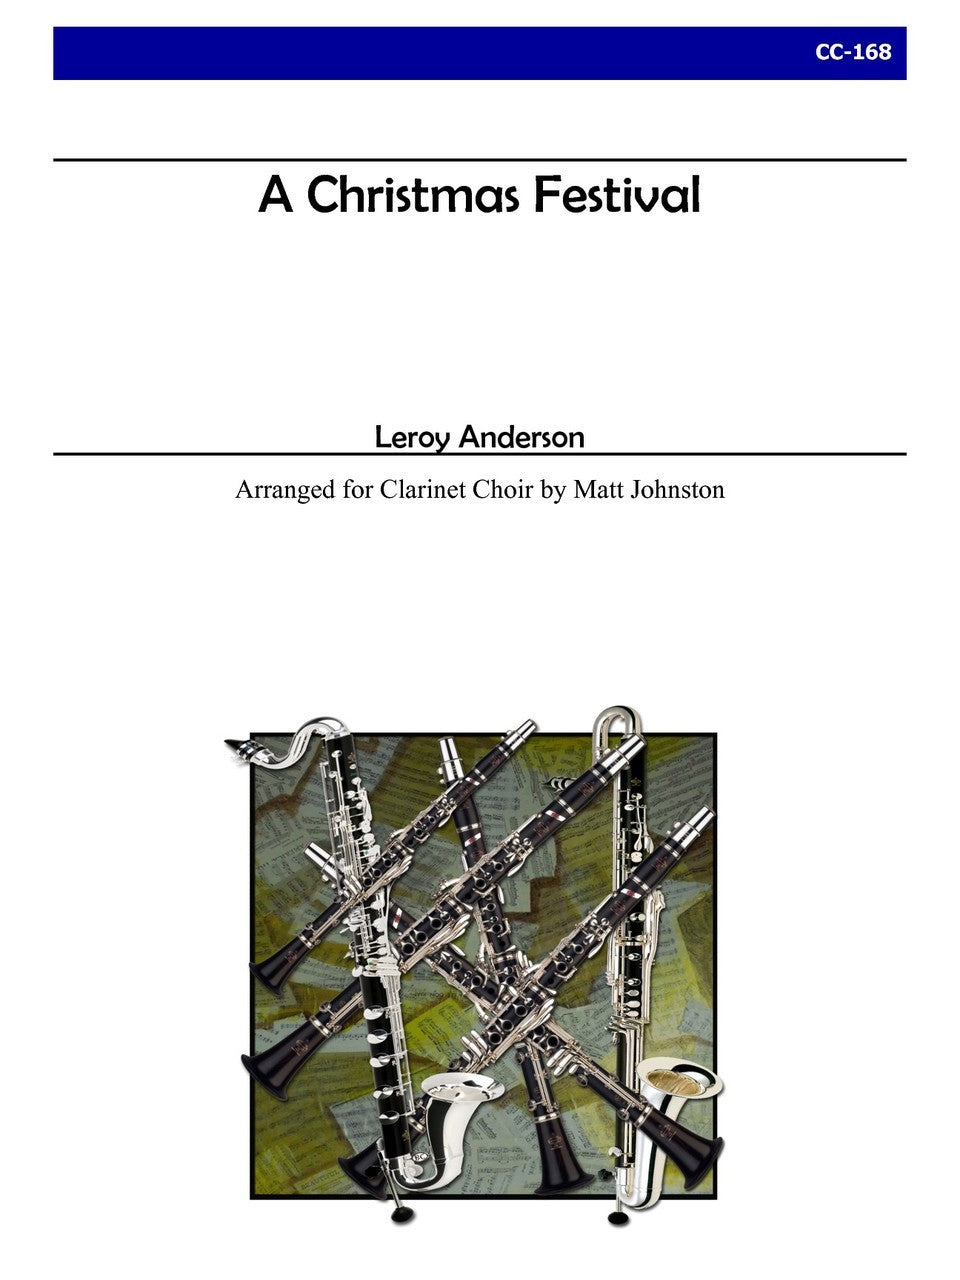 Anderson (arr. Matt Johnston) - A Christmas Festival for Clarinet Choir